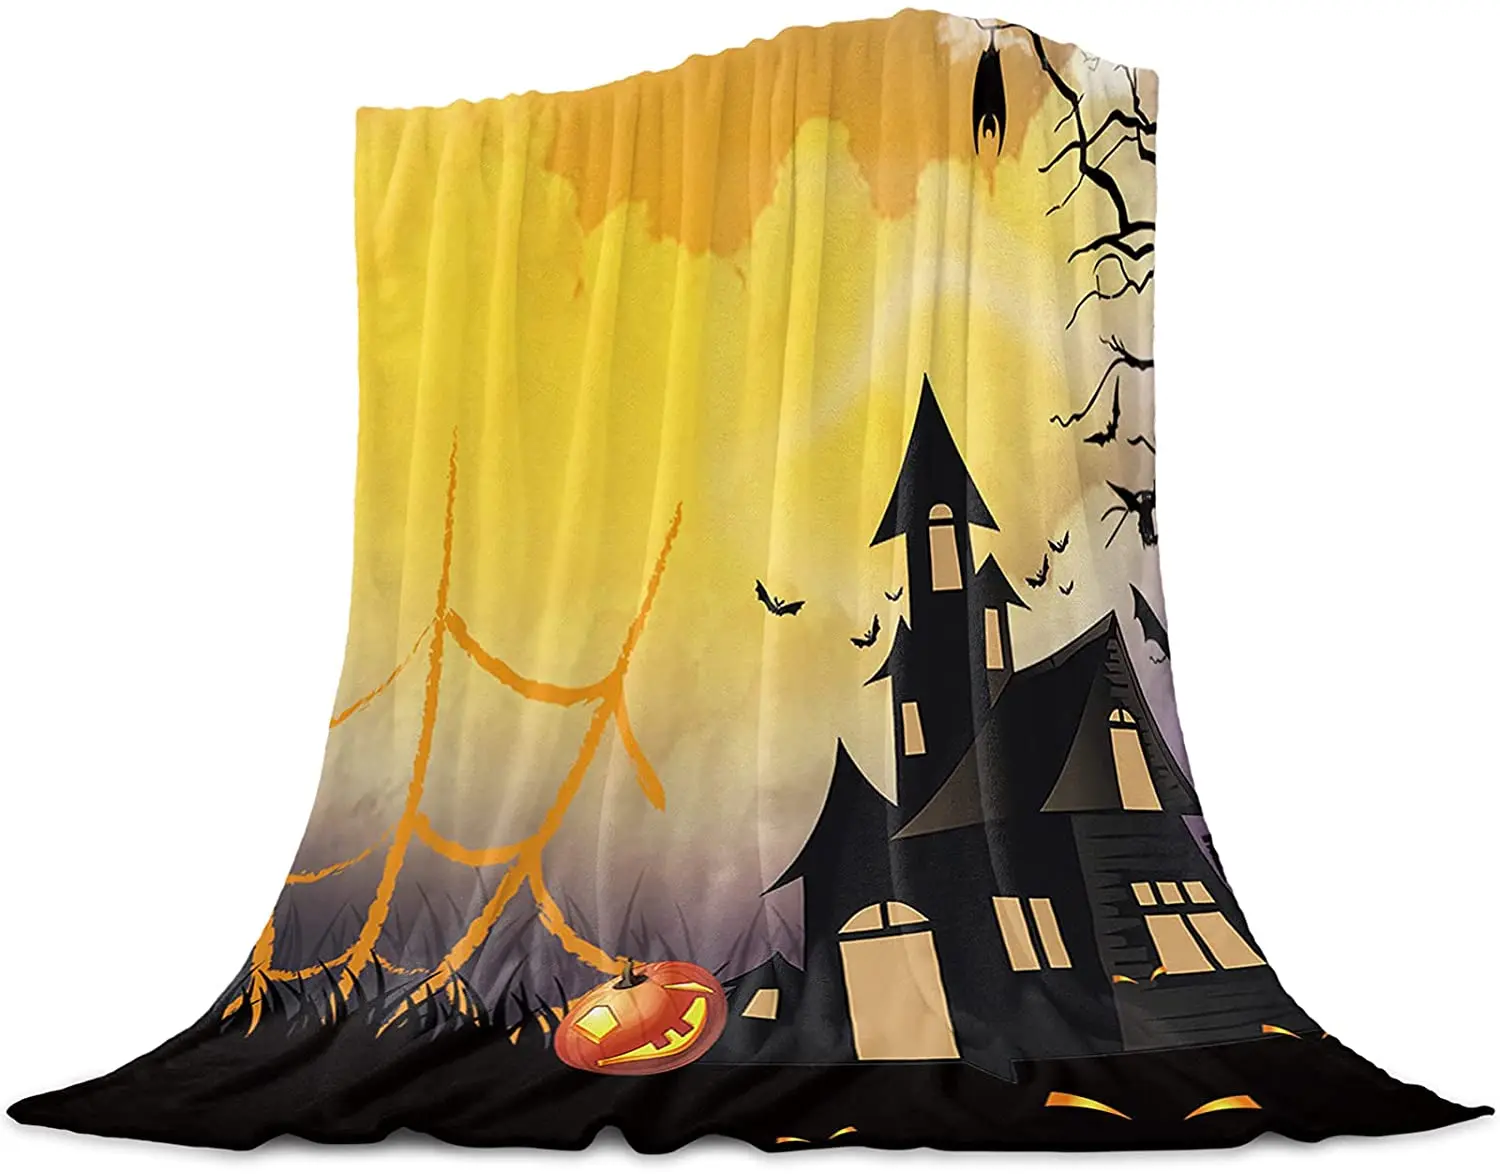 

Фланелевое Одеяло для кровати, супермягкое уютное легкое плюшевое покрывало, черный замок на Хэллоуин